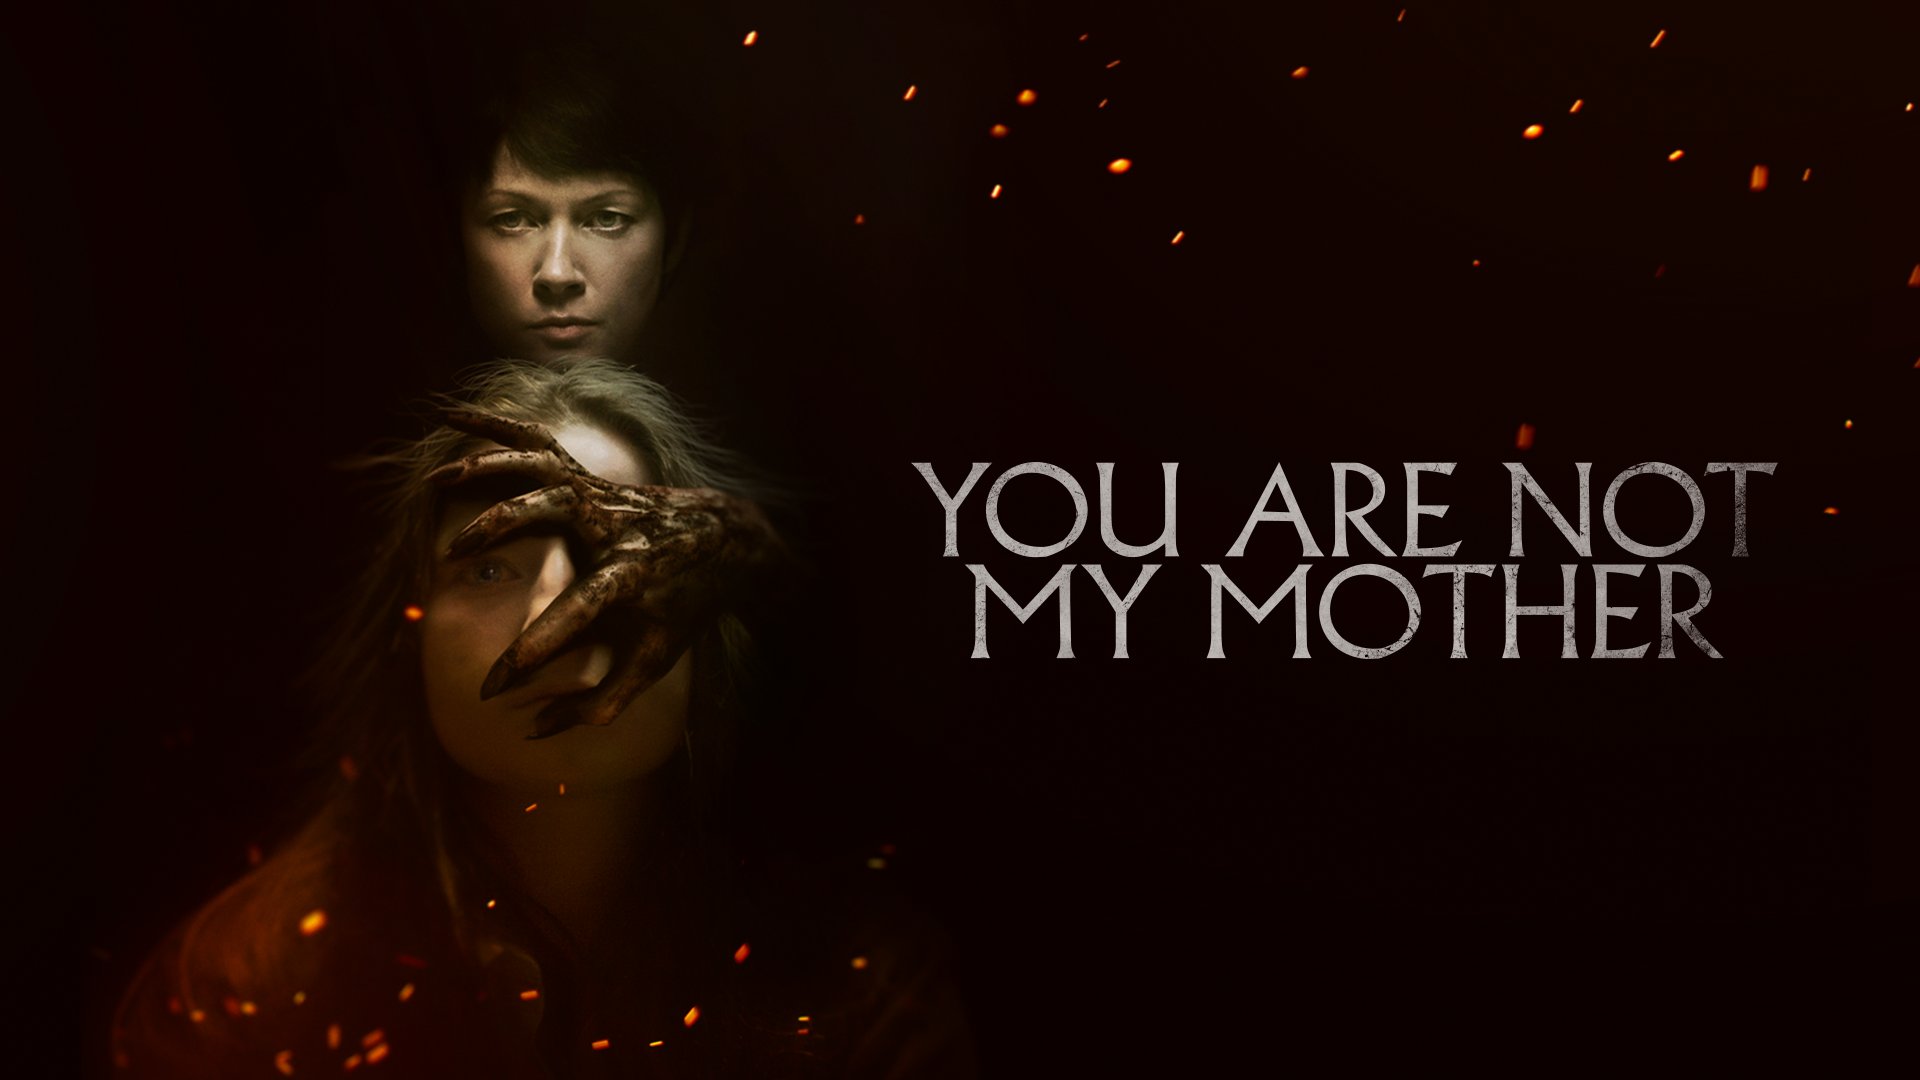 نقد فیلم تو مادرم نیستی (You Are Not My Mother) | رازهای ترسناک یک خانواده